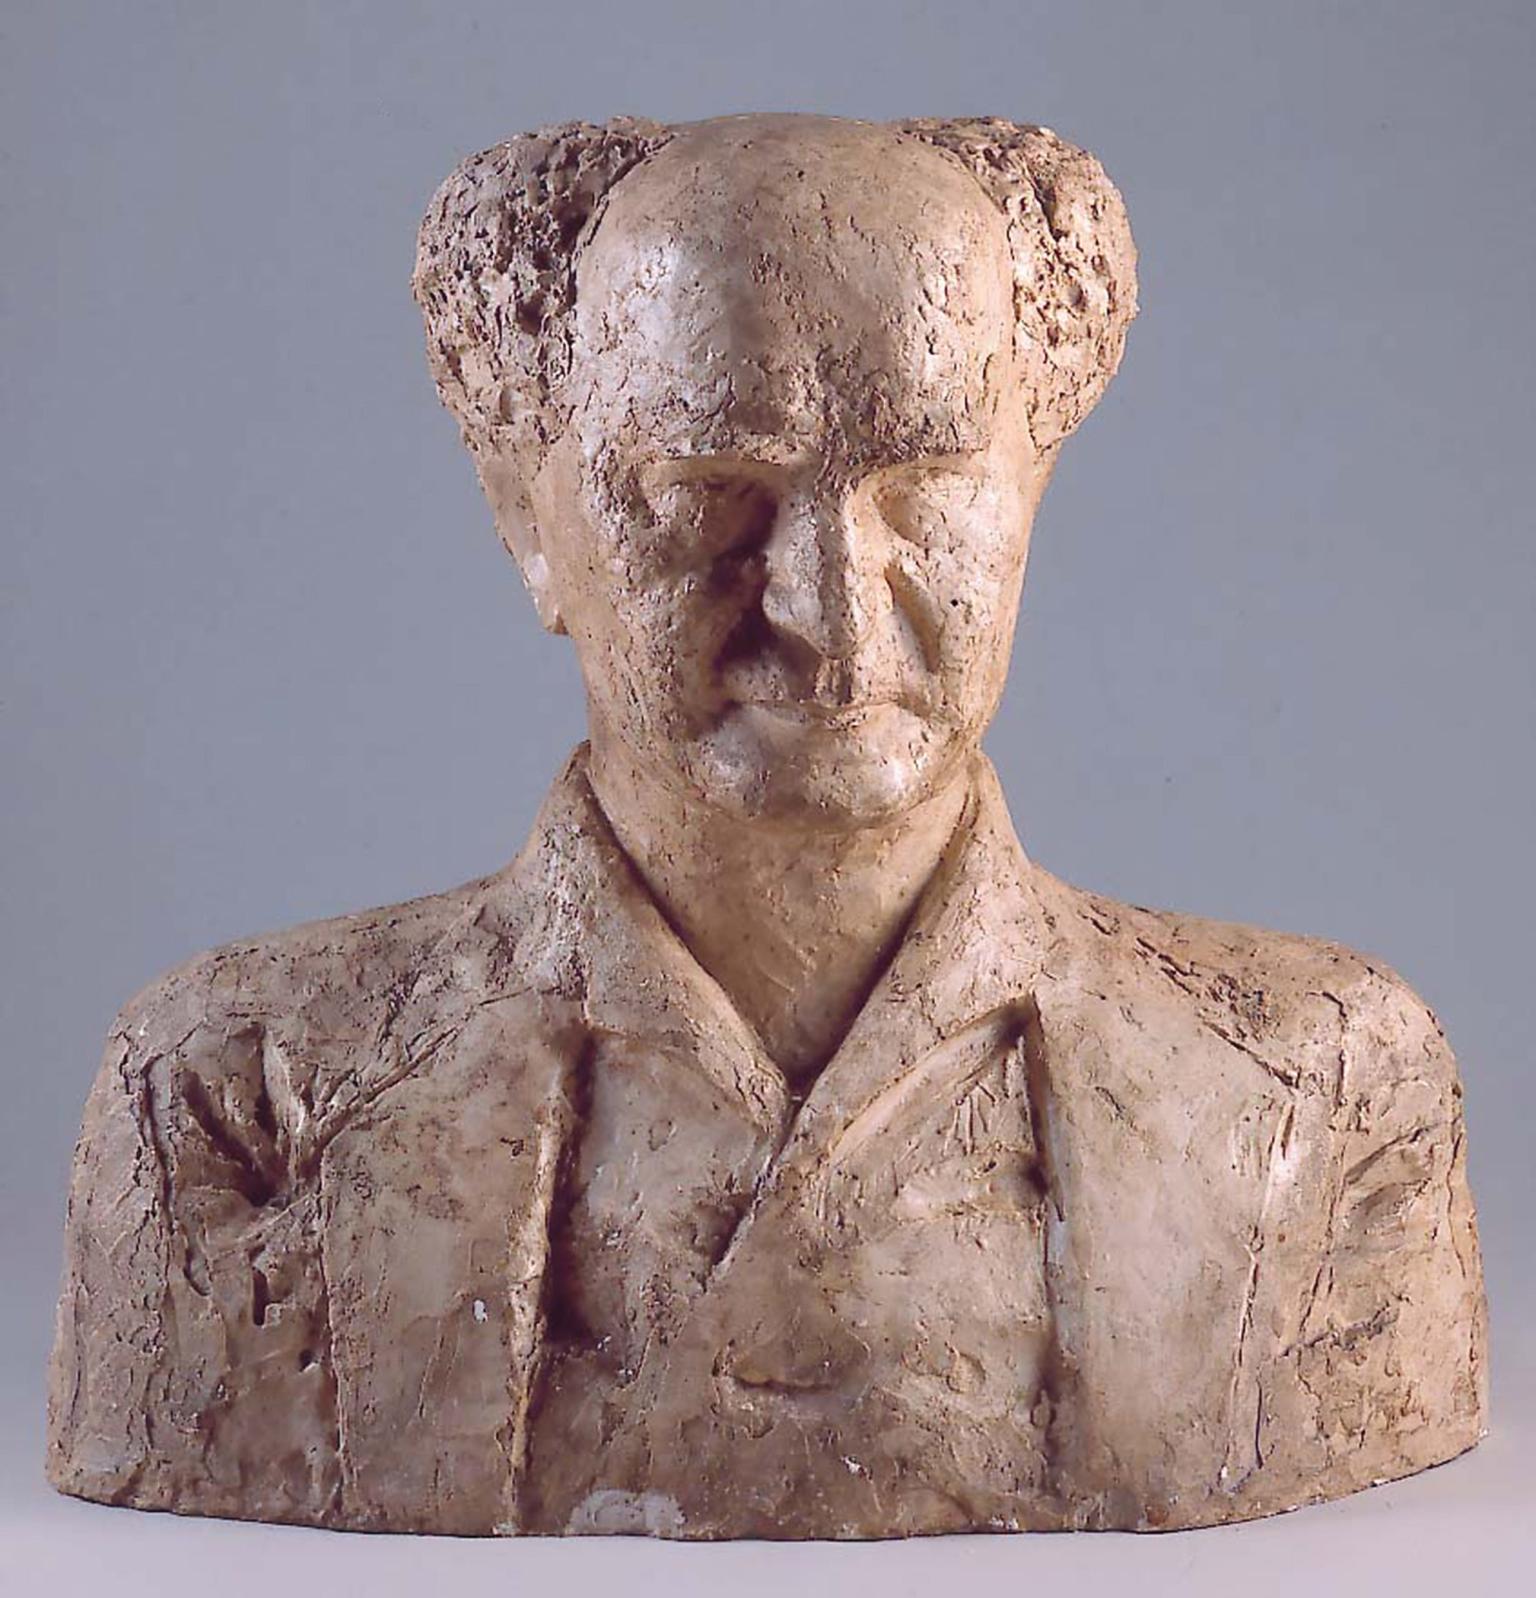 Bust sculpture of an elderly man with central bald spot facing viewer.